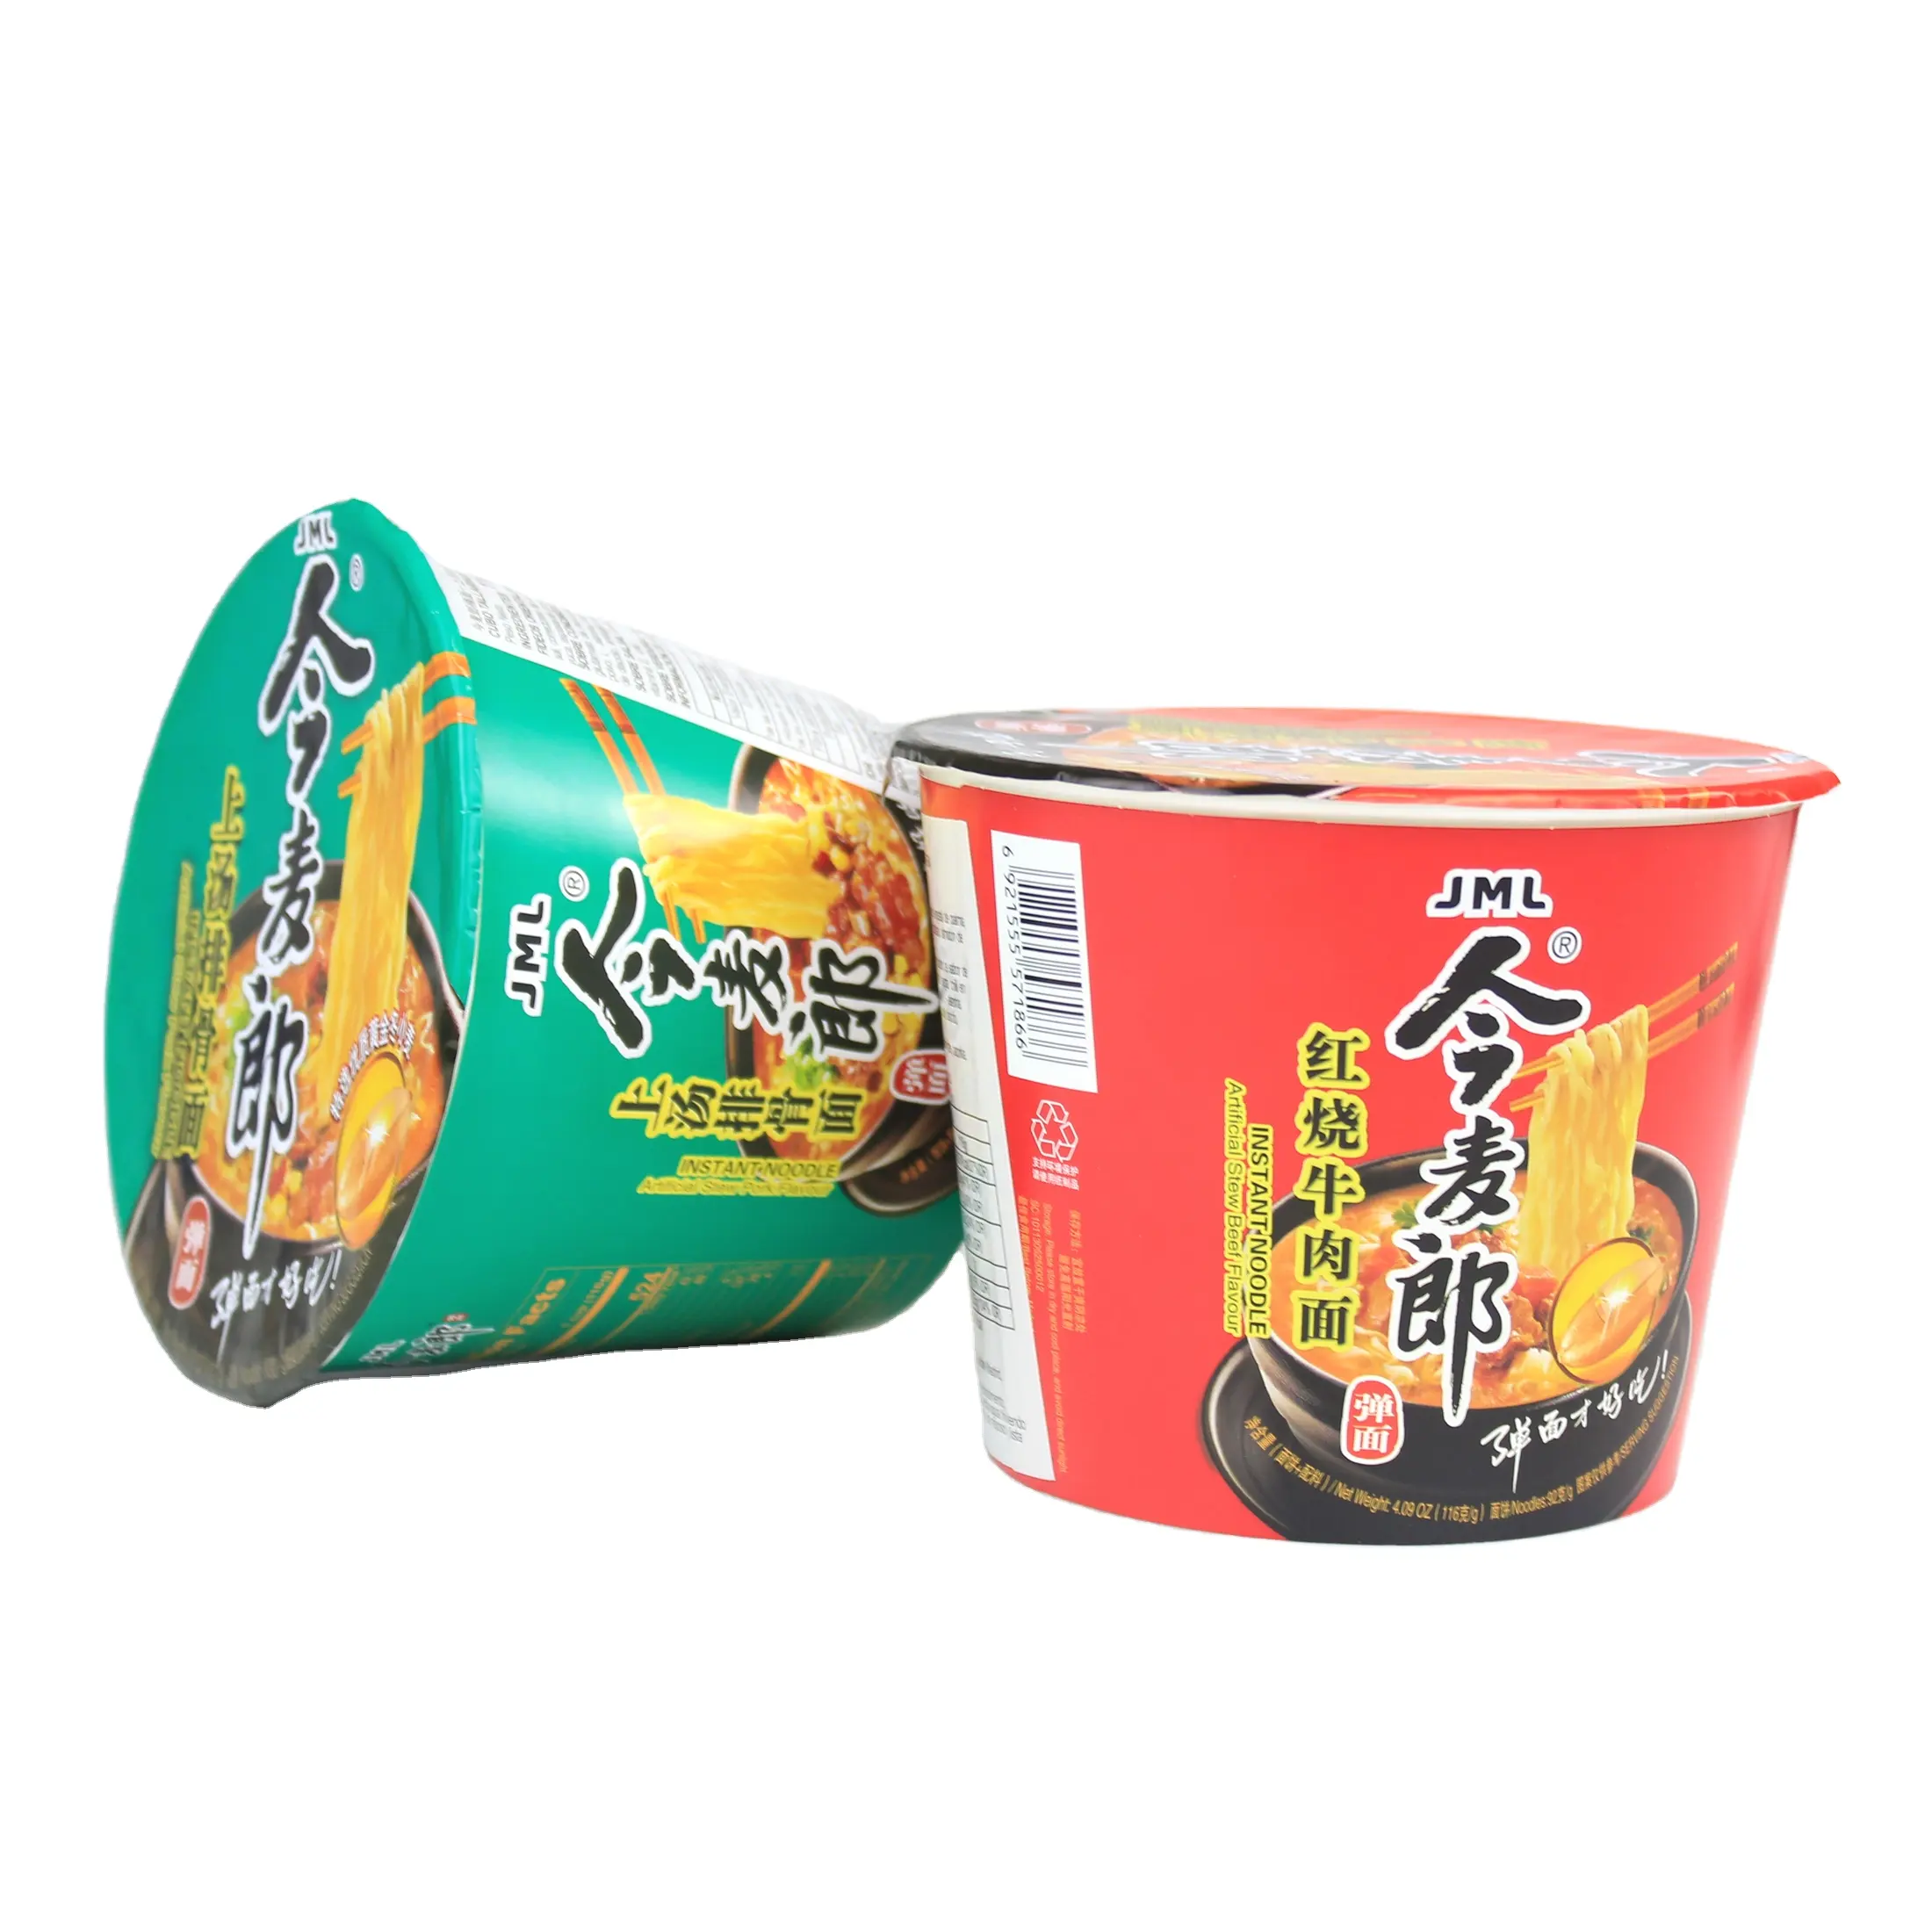 Gratis Monster Udon Noedel Pittige Kimchi Smaak Haccp Koreaanse Ramen Handige Jin Ramen Instant Noedels